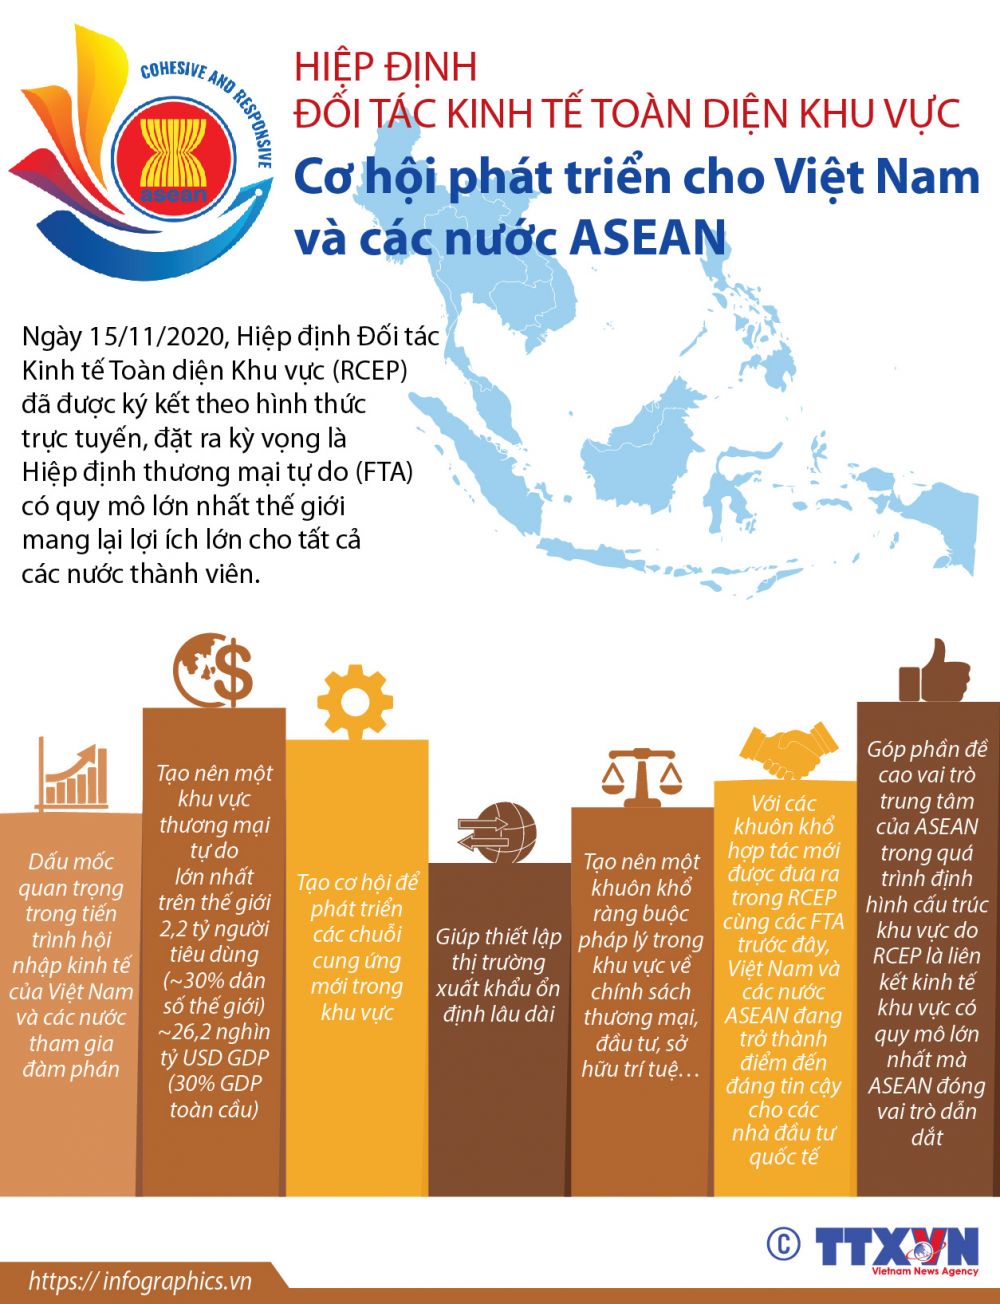 RCEP mang lại động lực mới cho hợp tác kinh tế Trung Quốc - ASEAN